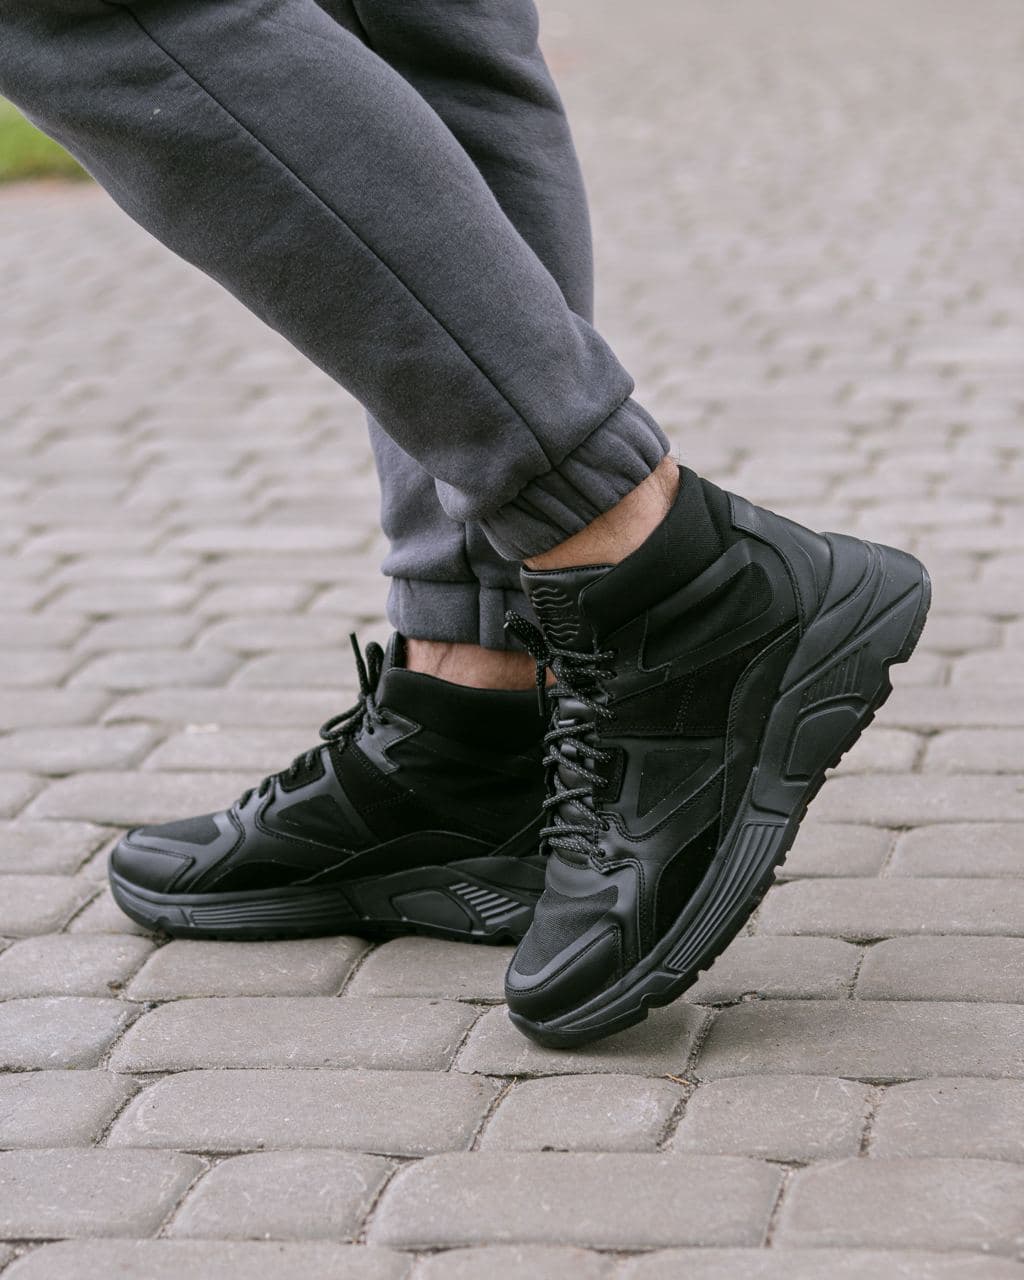 Мужские зимние кроссовки кожаные (ботинки) черные Protect - Фото 1